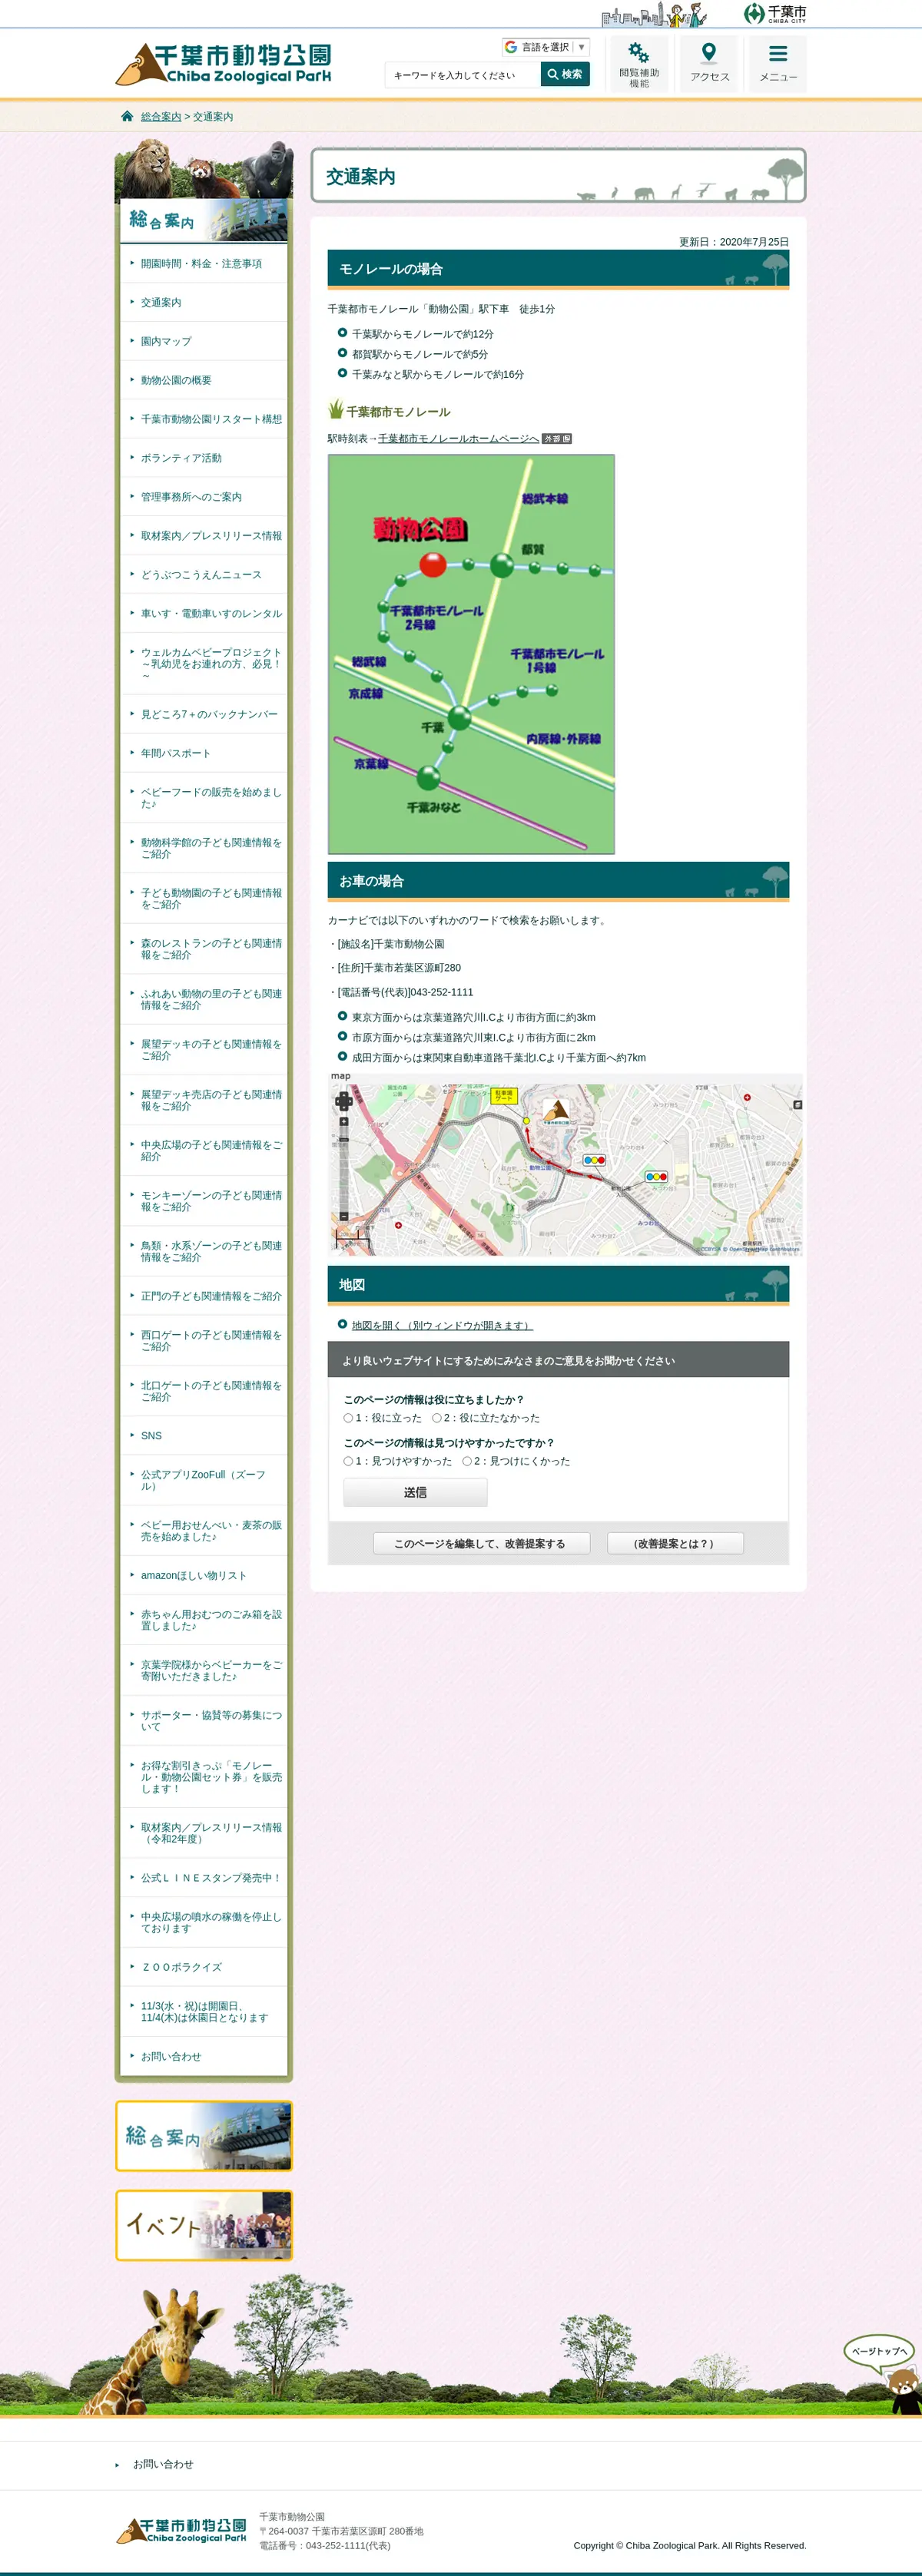 キャプチャ画面 会社名:千葉市都市局公園緑地部プロジェクト名:千葉市動物公園 画面名:アクセス・地図・マップ詳細 デバイス名:PCカテゴリ:動物・ペットタグ:アクセス・地図・マップ詳細